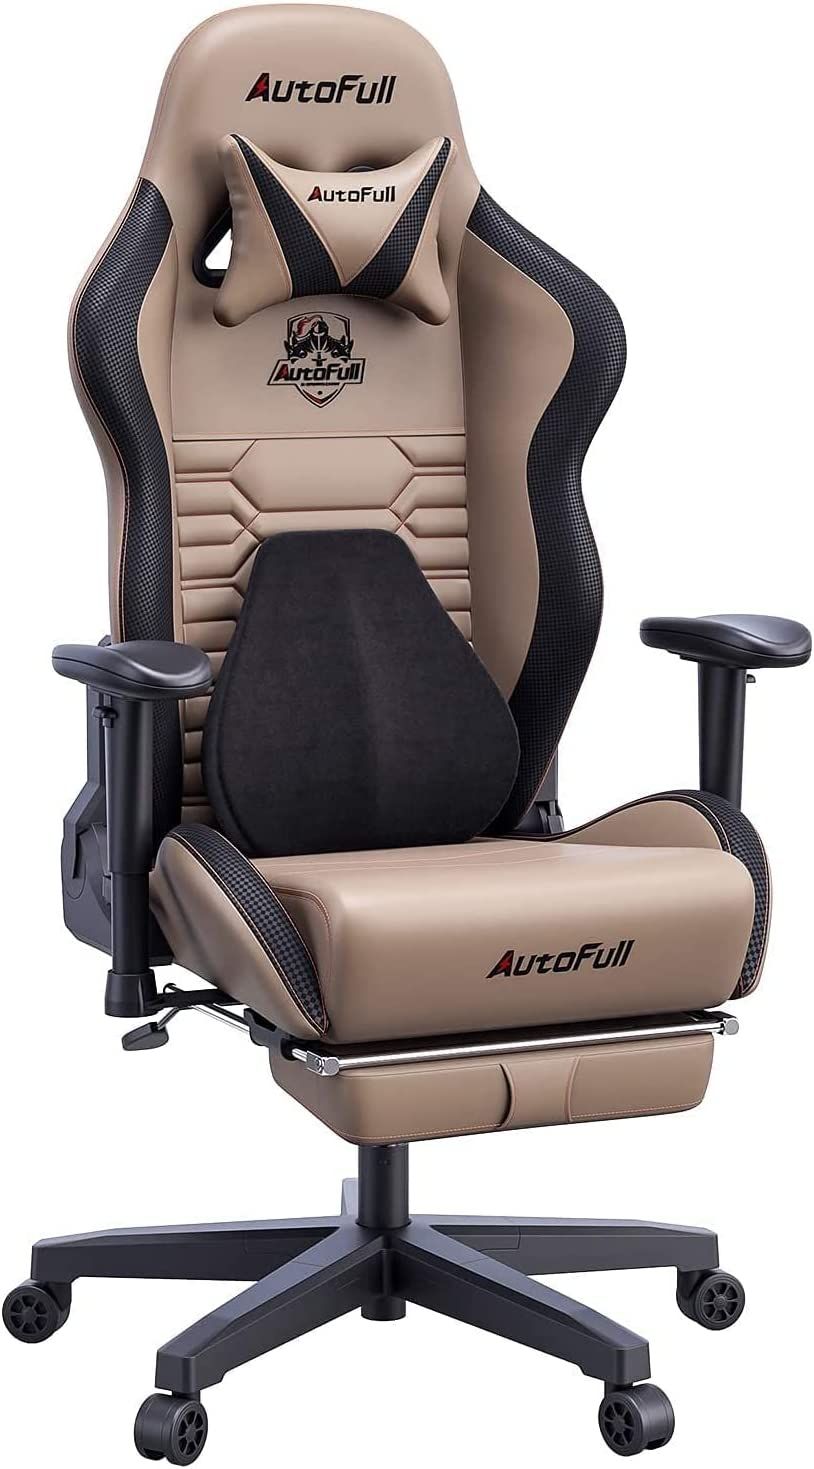 AutoFull Gaming Chair Ergonomic Gamer Chair